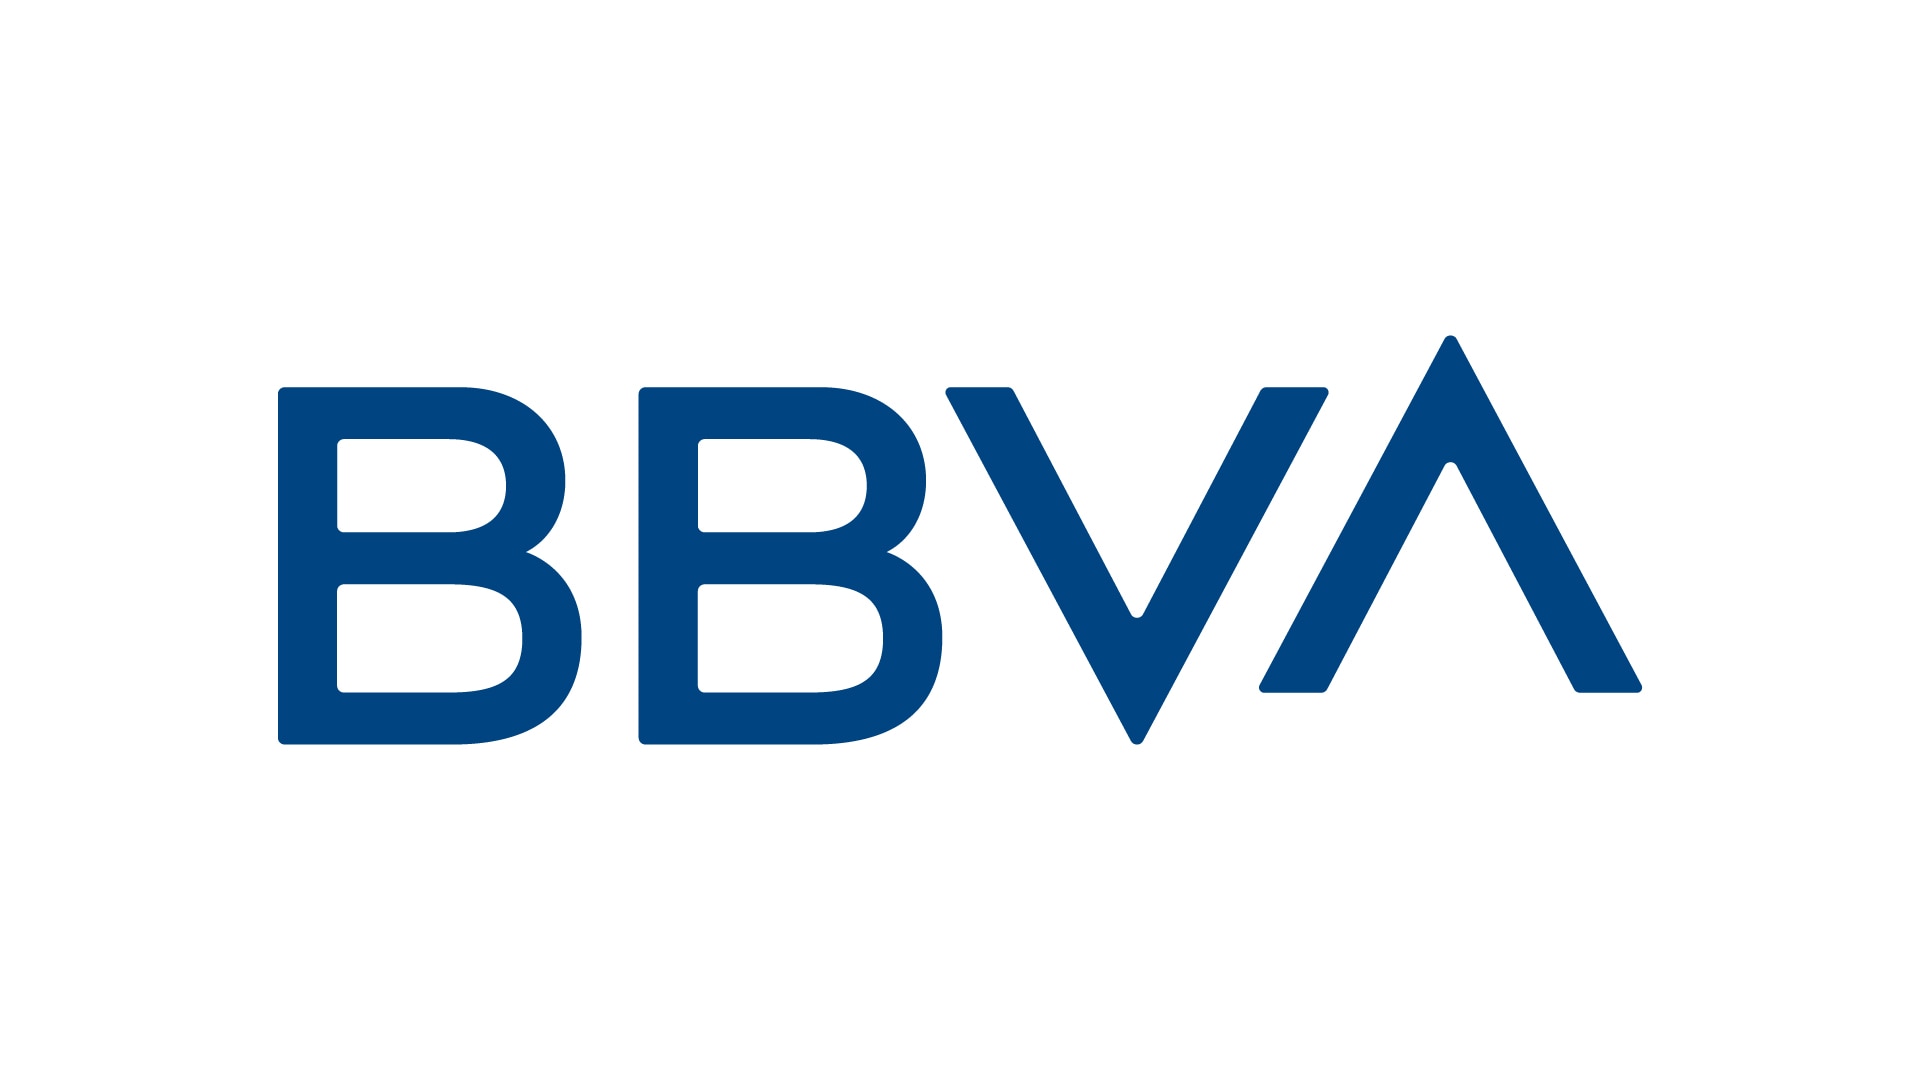 BBVA unifica su marca en todo el mundo y cambia su logo | BBVA